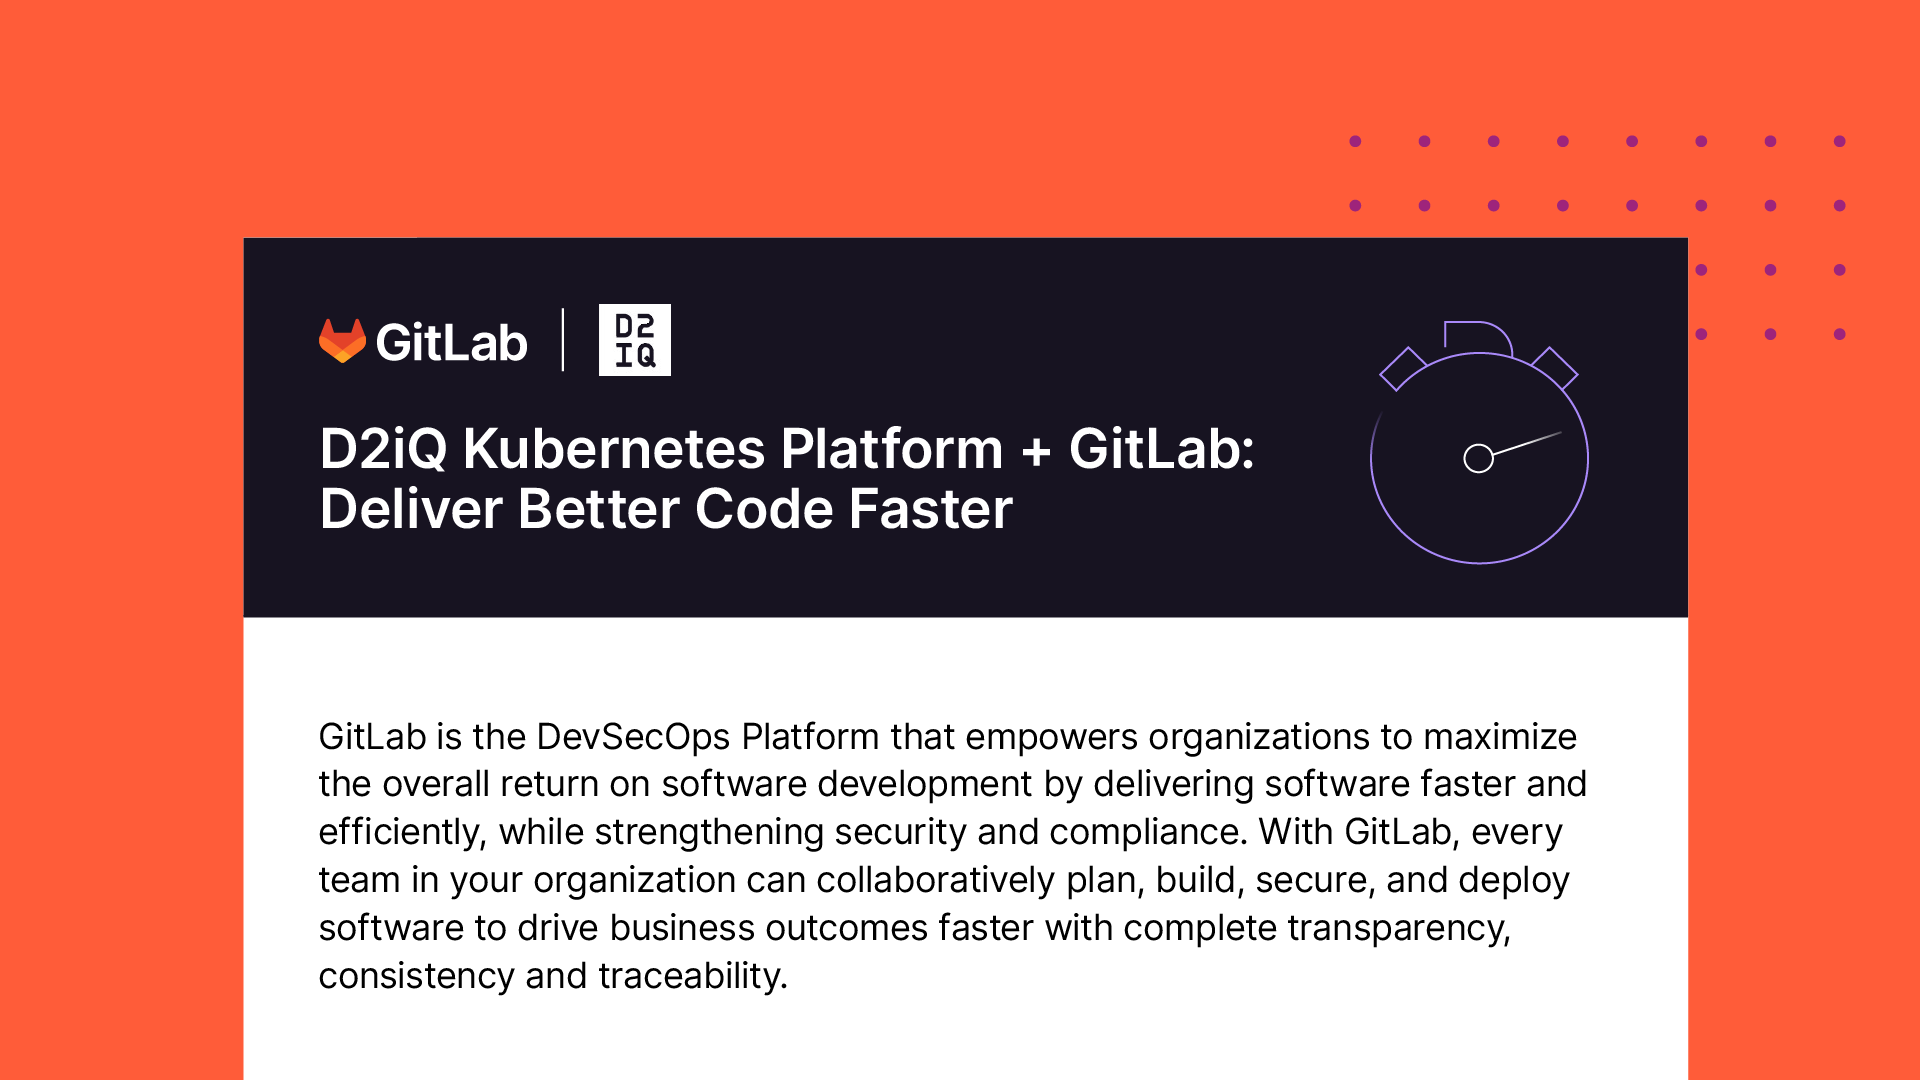 D2iQ Kubernetes Platform + GitLab: Deliver Better Code Faster